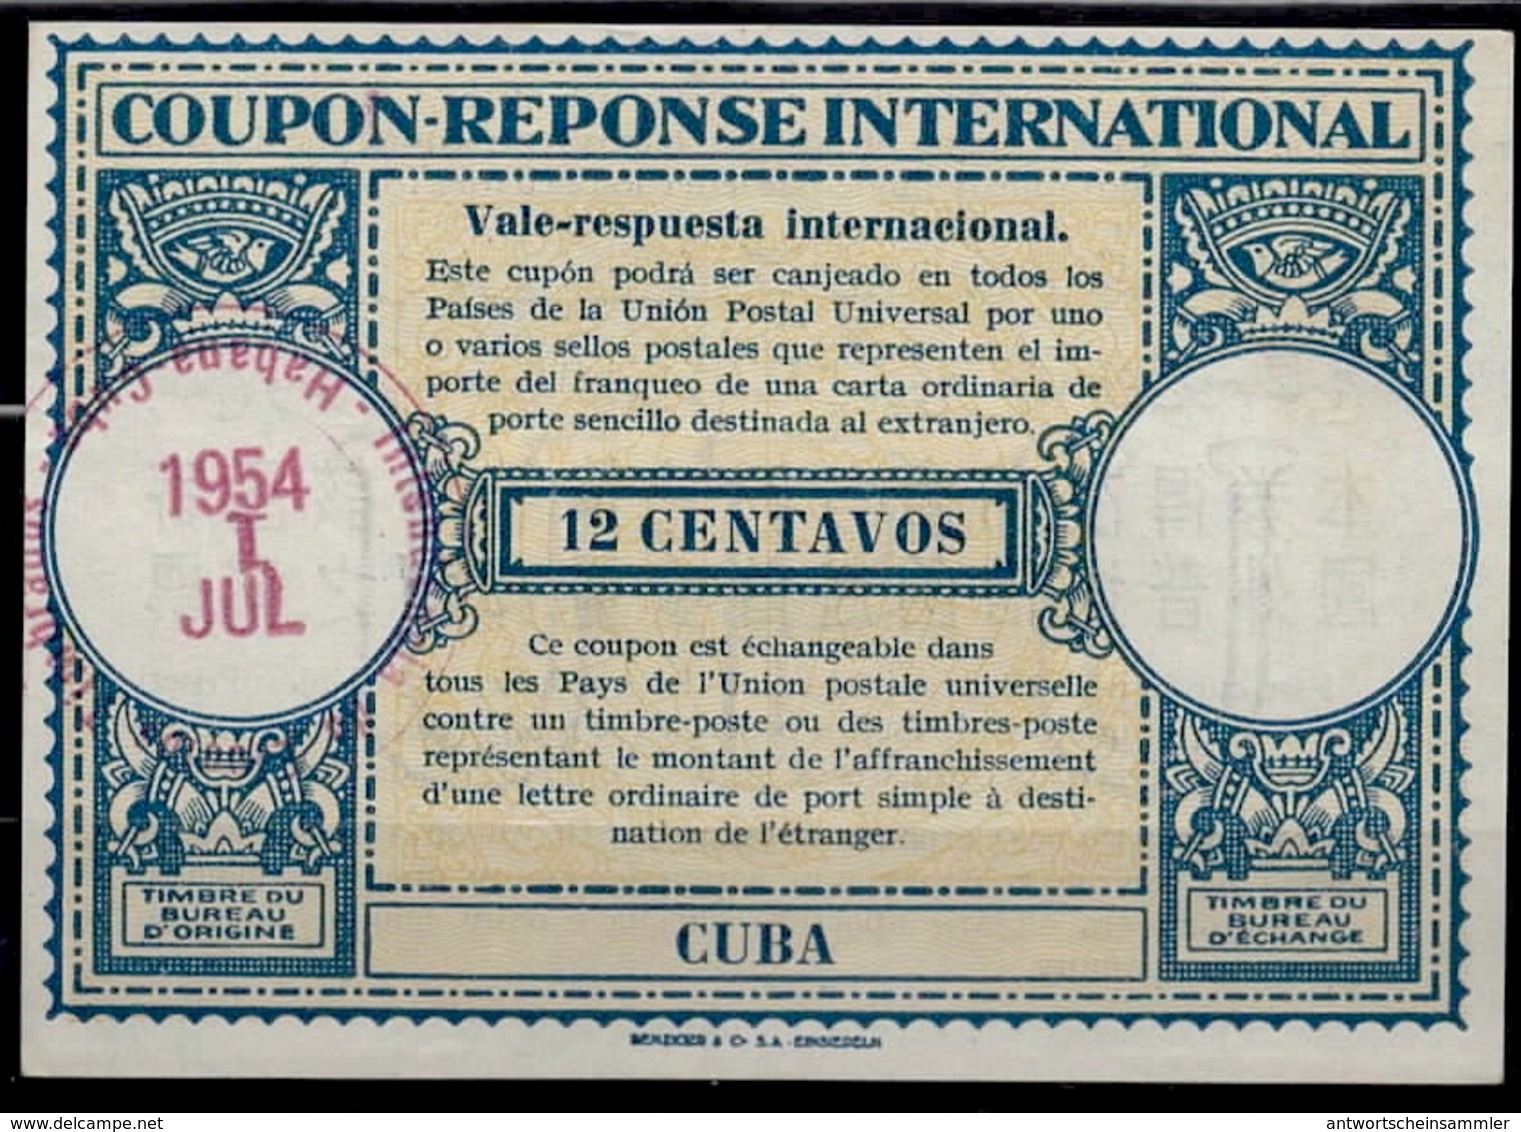 CUBA  Lo15 12 CENTAVOS International Reply Coupon Reponse Respuesta Antwortschein IRC IAS O LA HABANA 1.7.54 - Briefe U. Dokumente